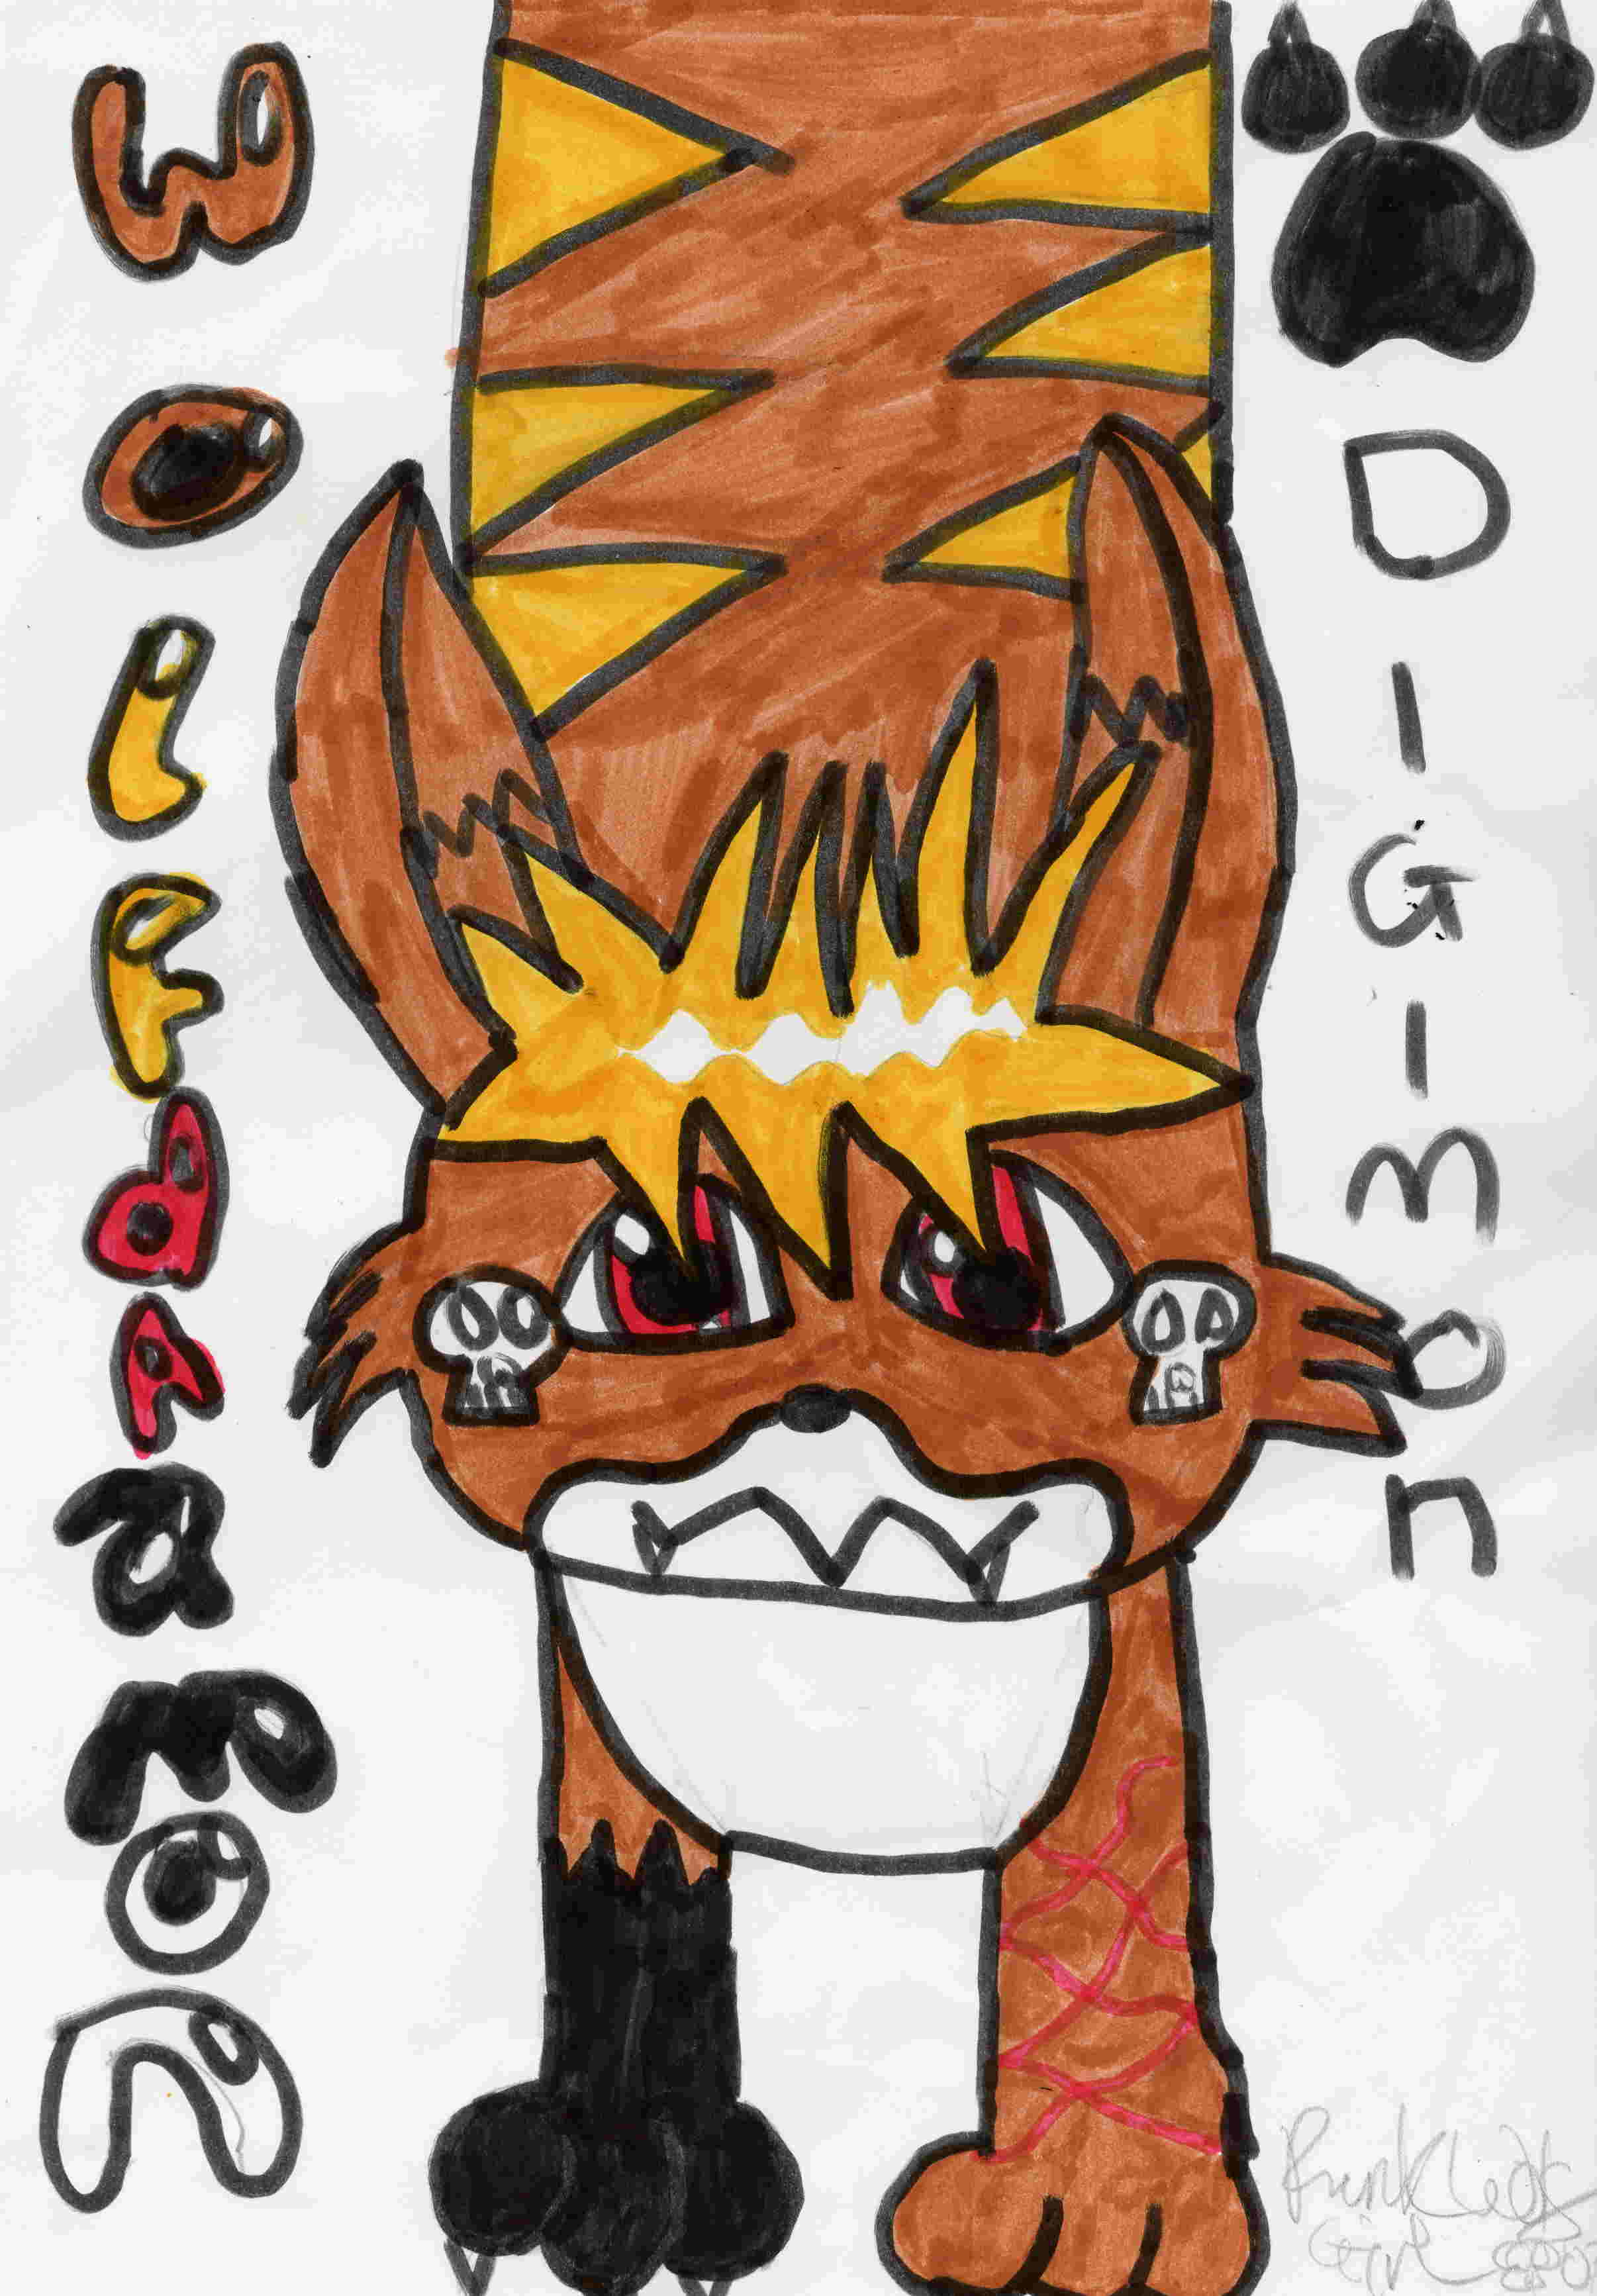 My Digimon, Wolfdramon by PunkWolfGirl